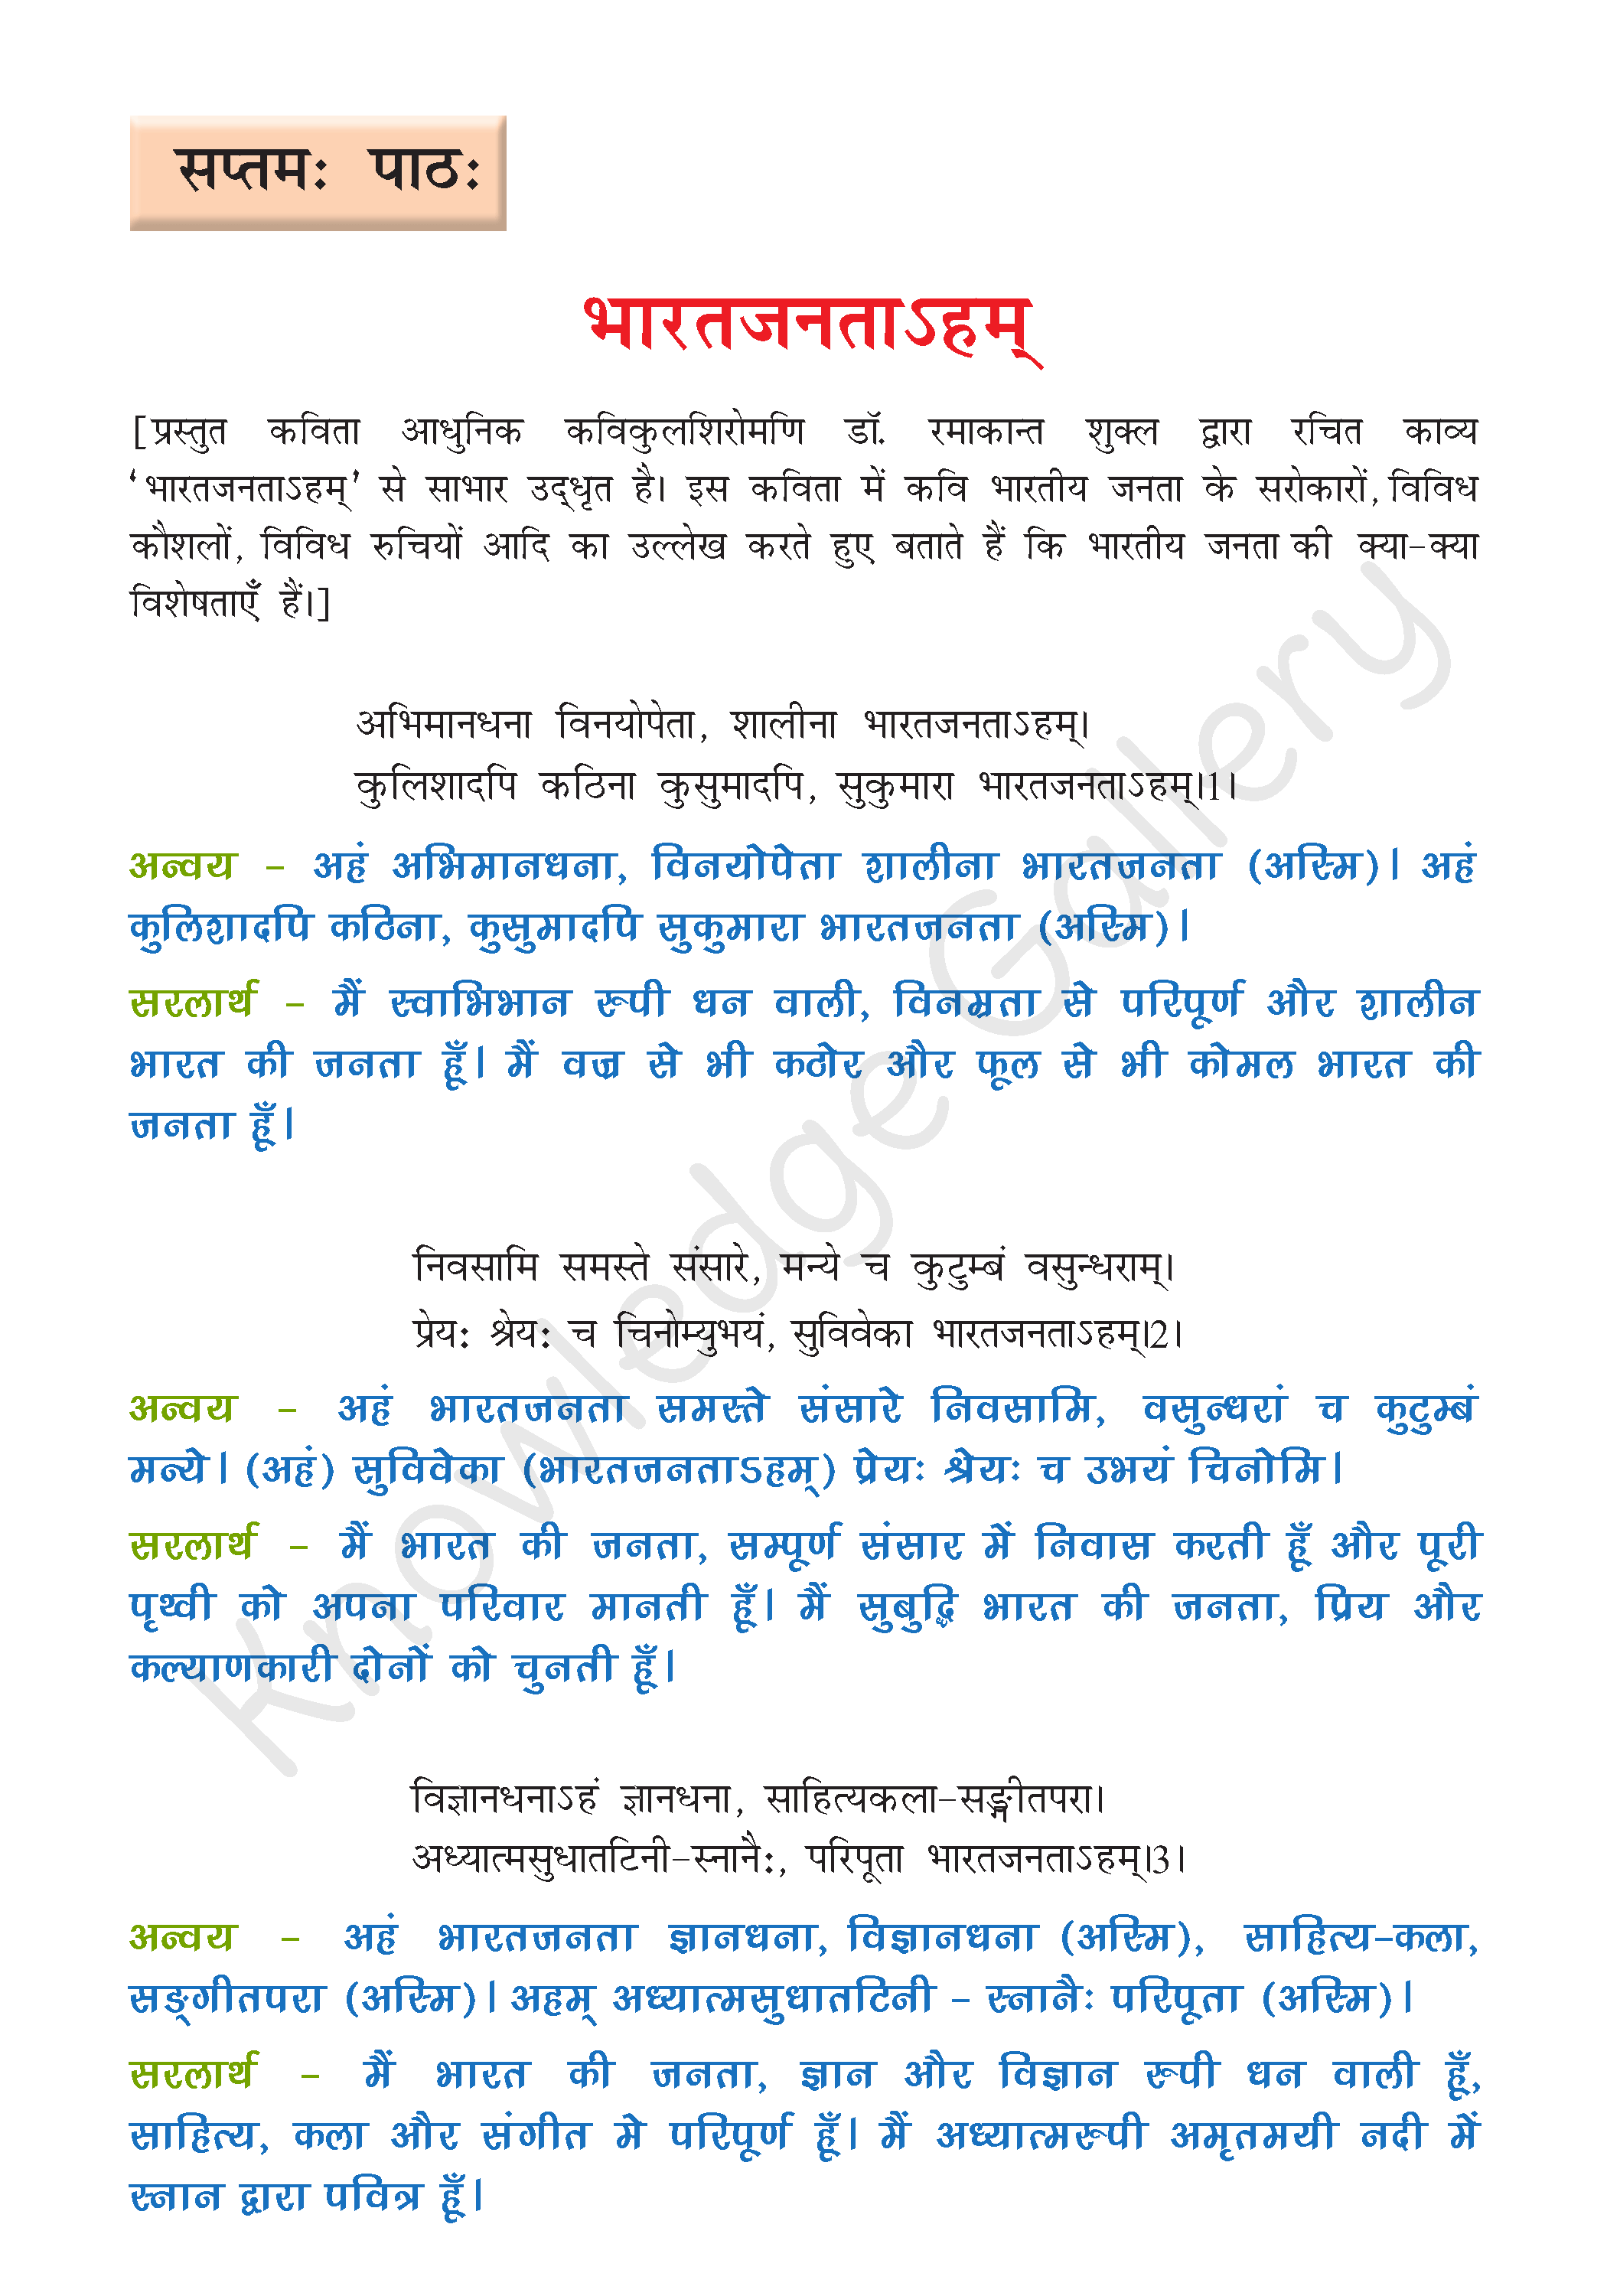 NCERT Solution For Class 8 Sanskrit Chapter 7 part 1